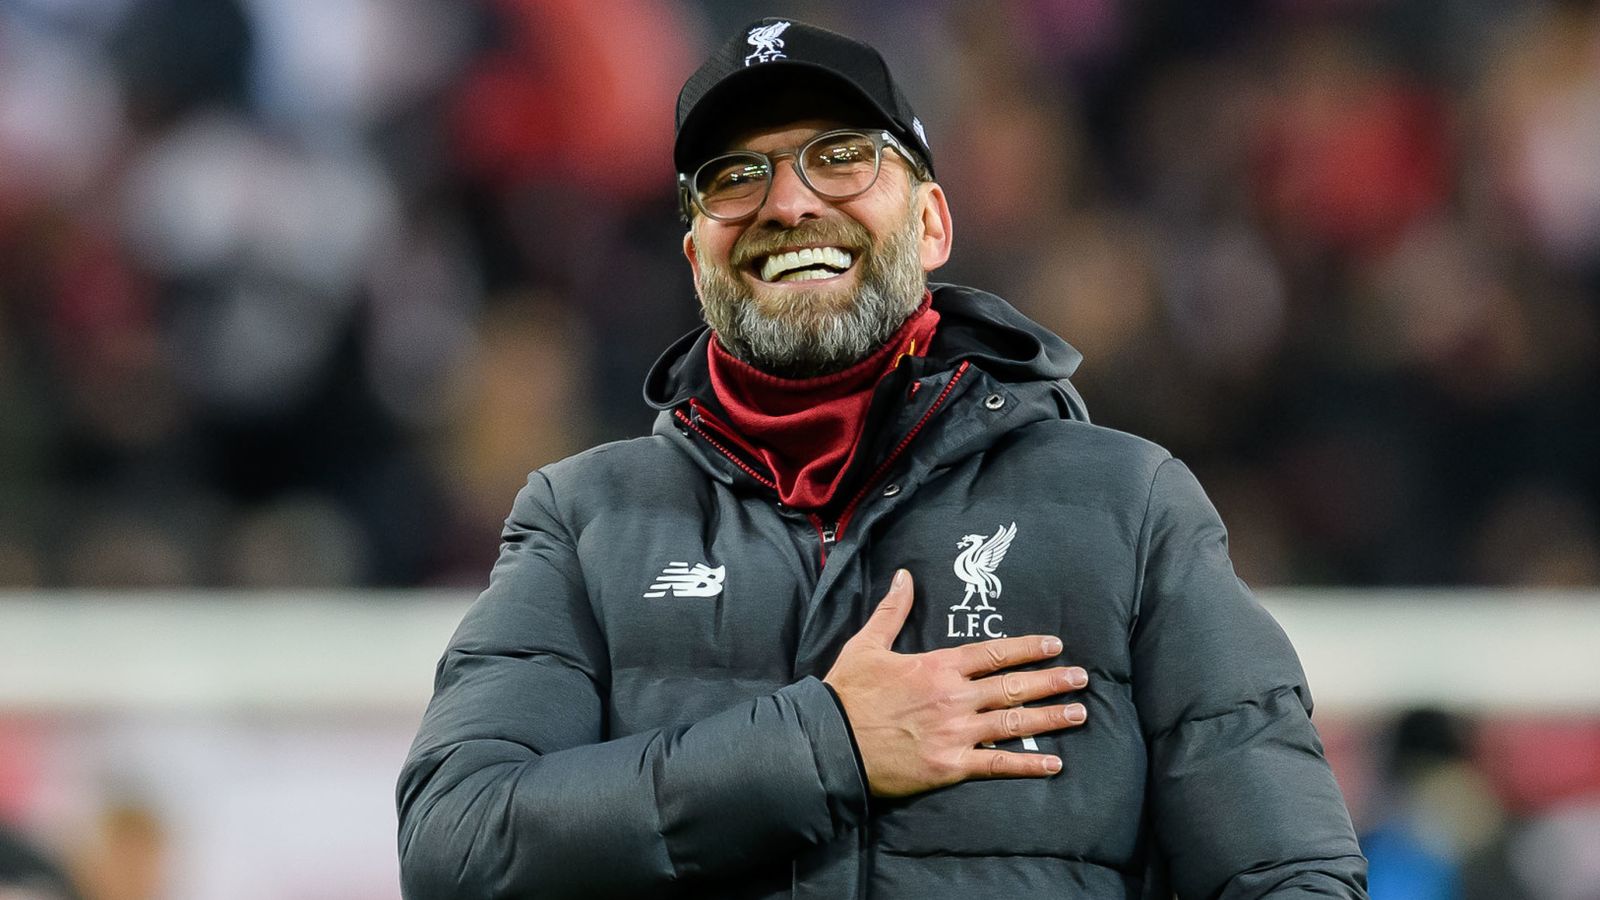 Offiziell Jürgen Klopp Verlängert Langfristig Beim Fc Liverpool Fußball News Sky Sport